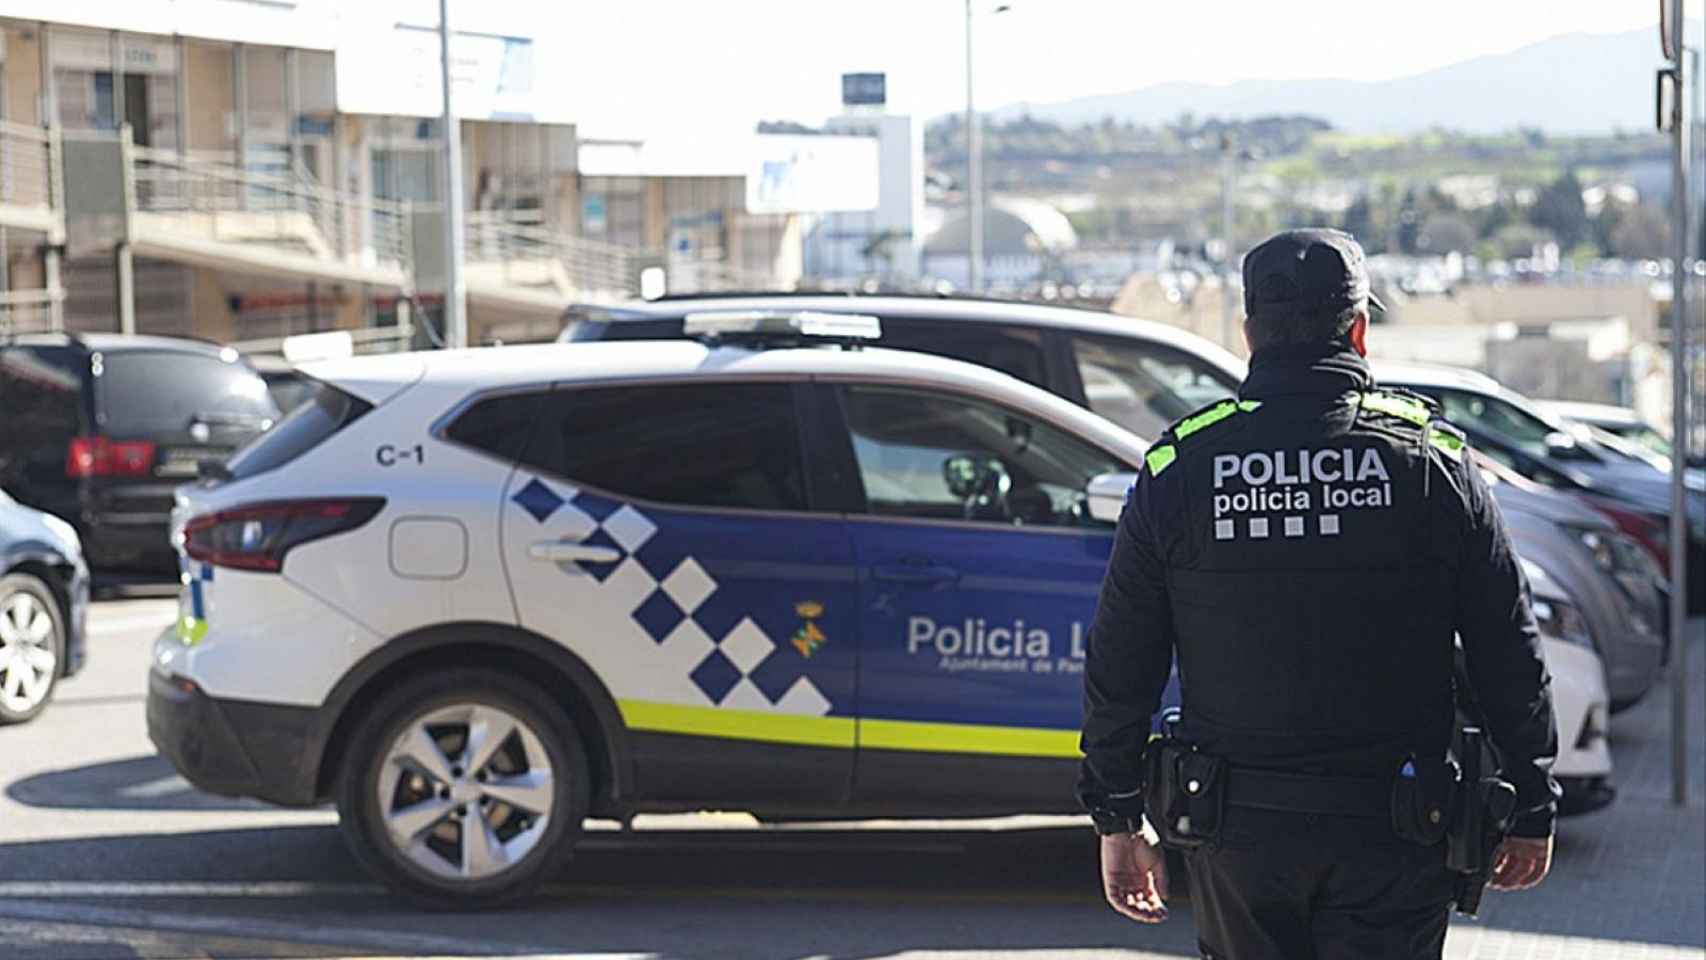 Policía Local de Parets del Vallès / AYUNTAMIENTO DE PARETS